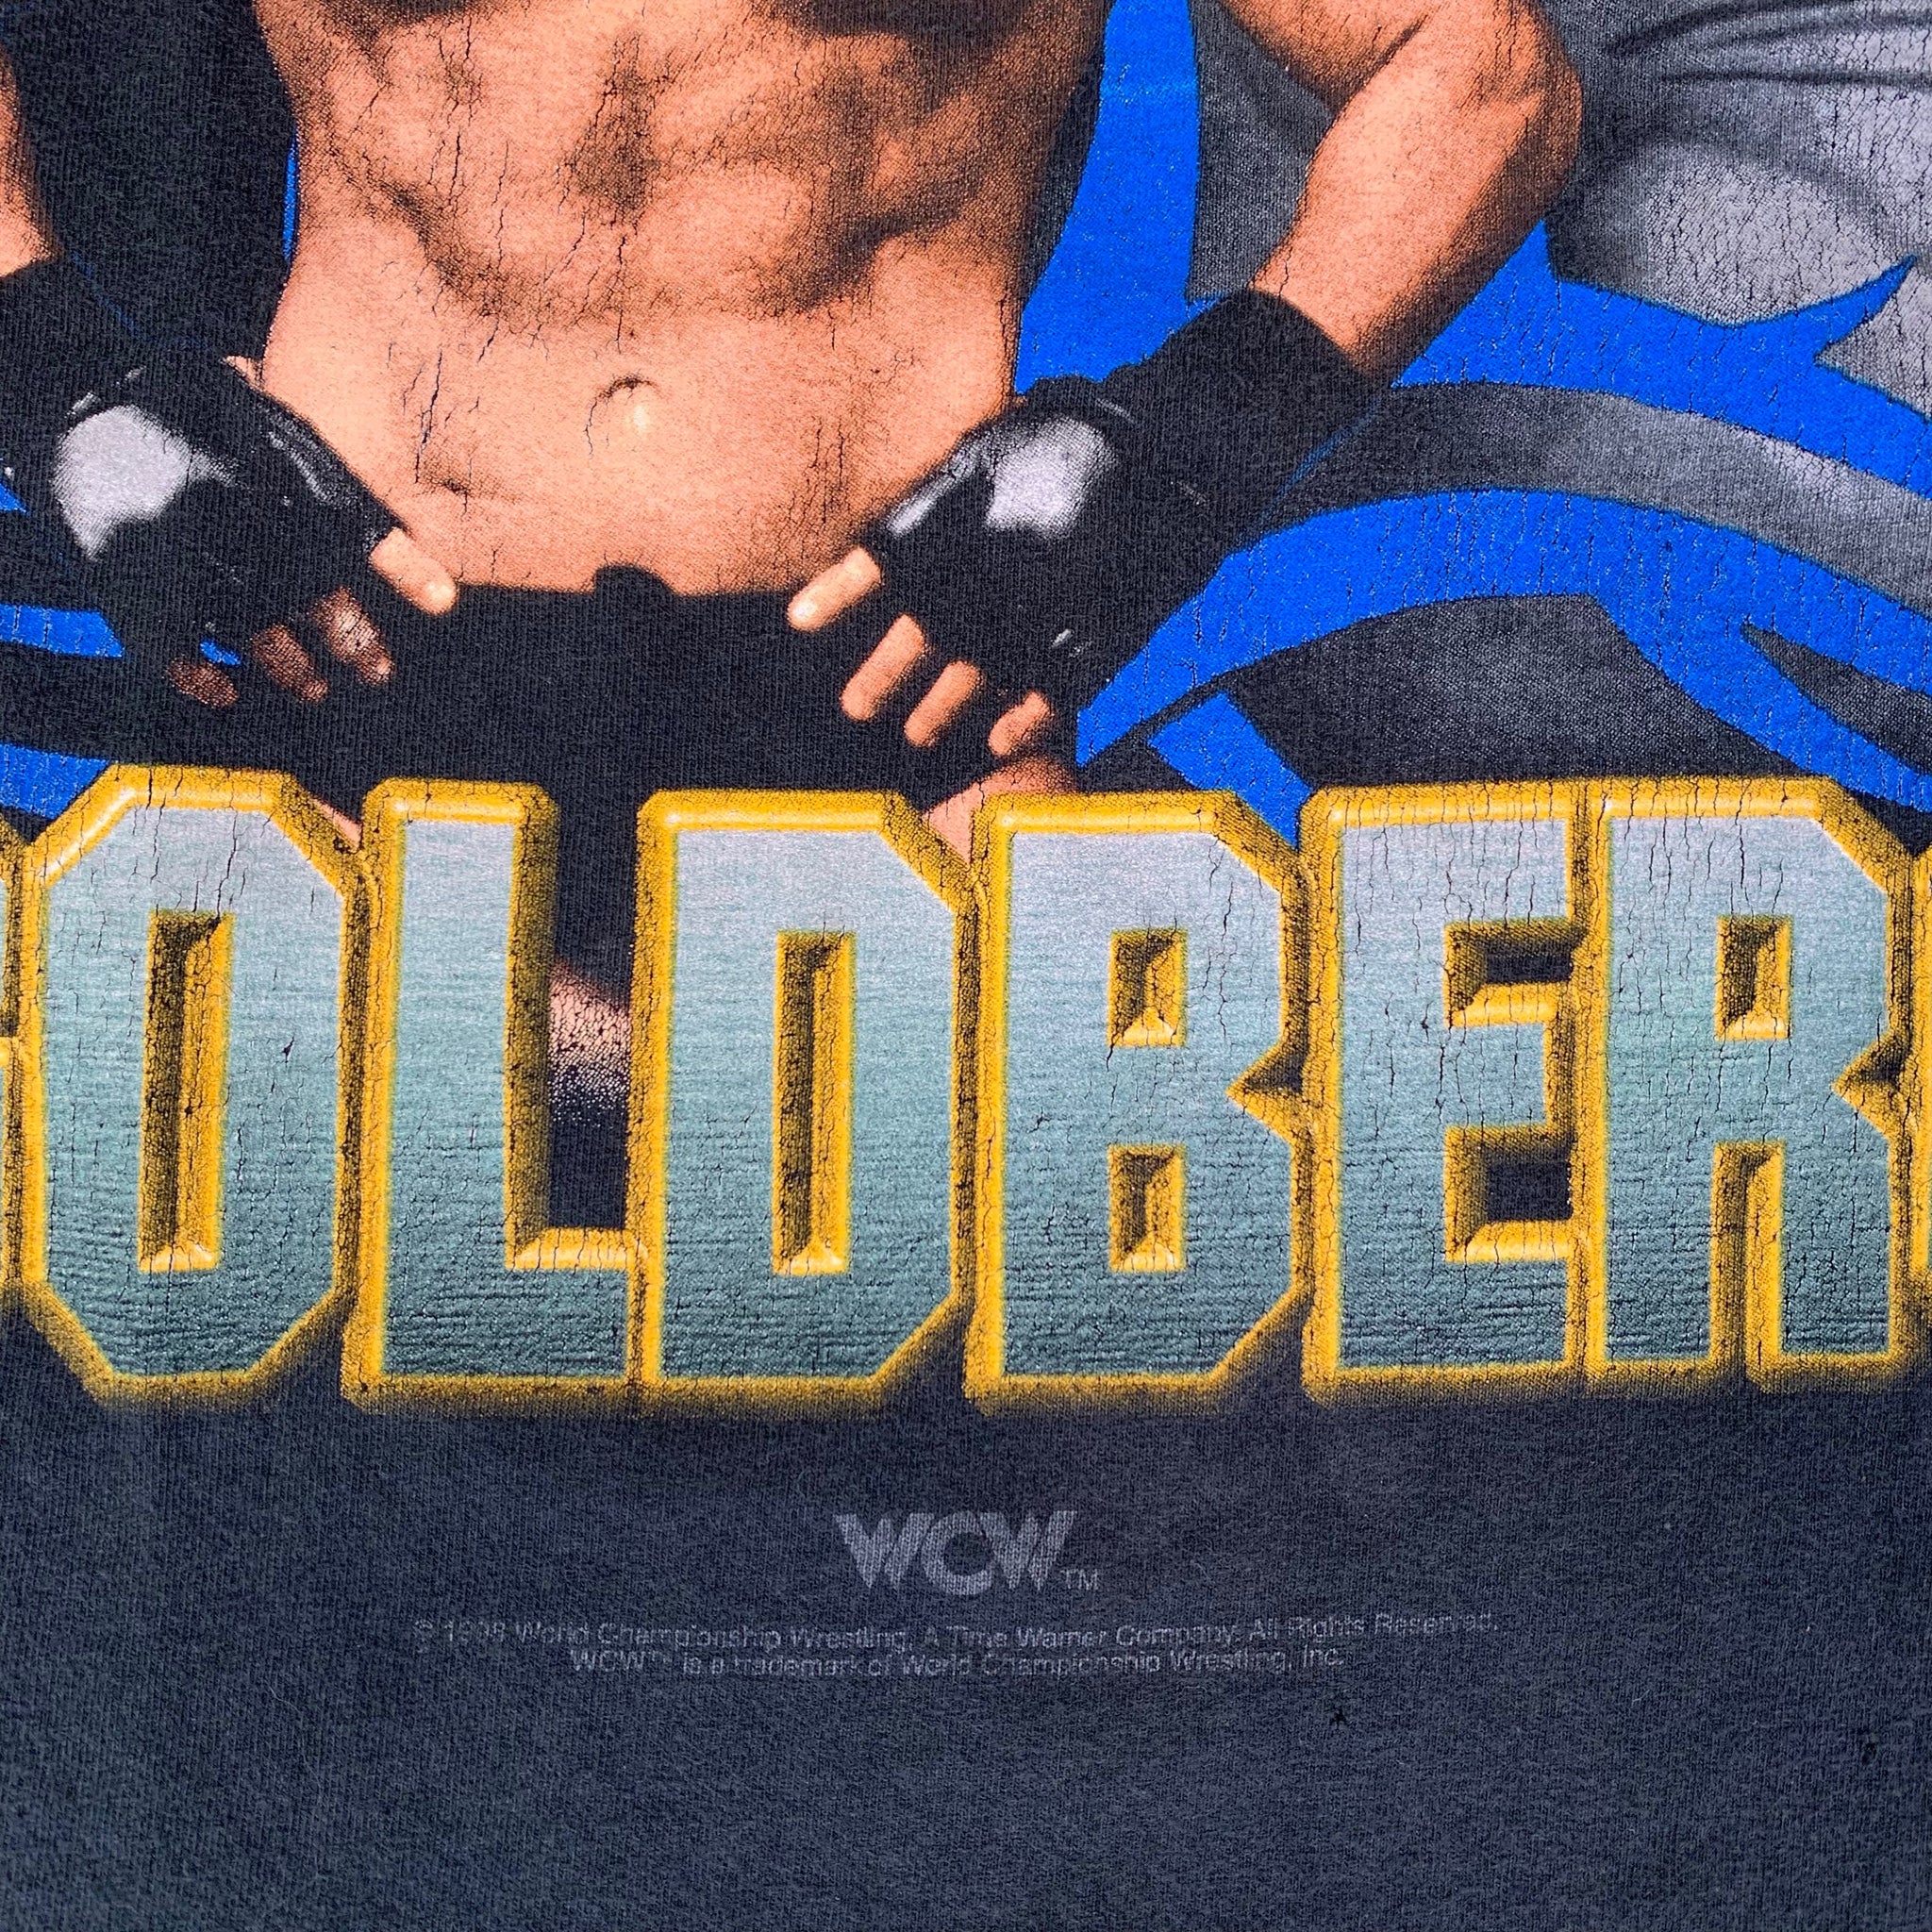 Vtg 1995 Goldberg WCW Wrestling Mens Baseball Jersey Black Gold